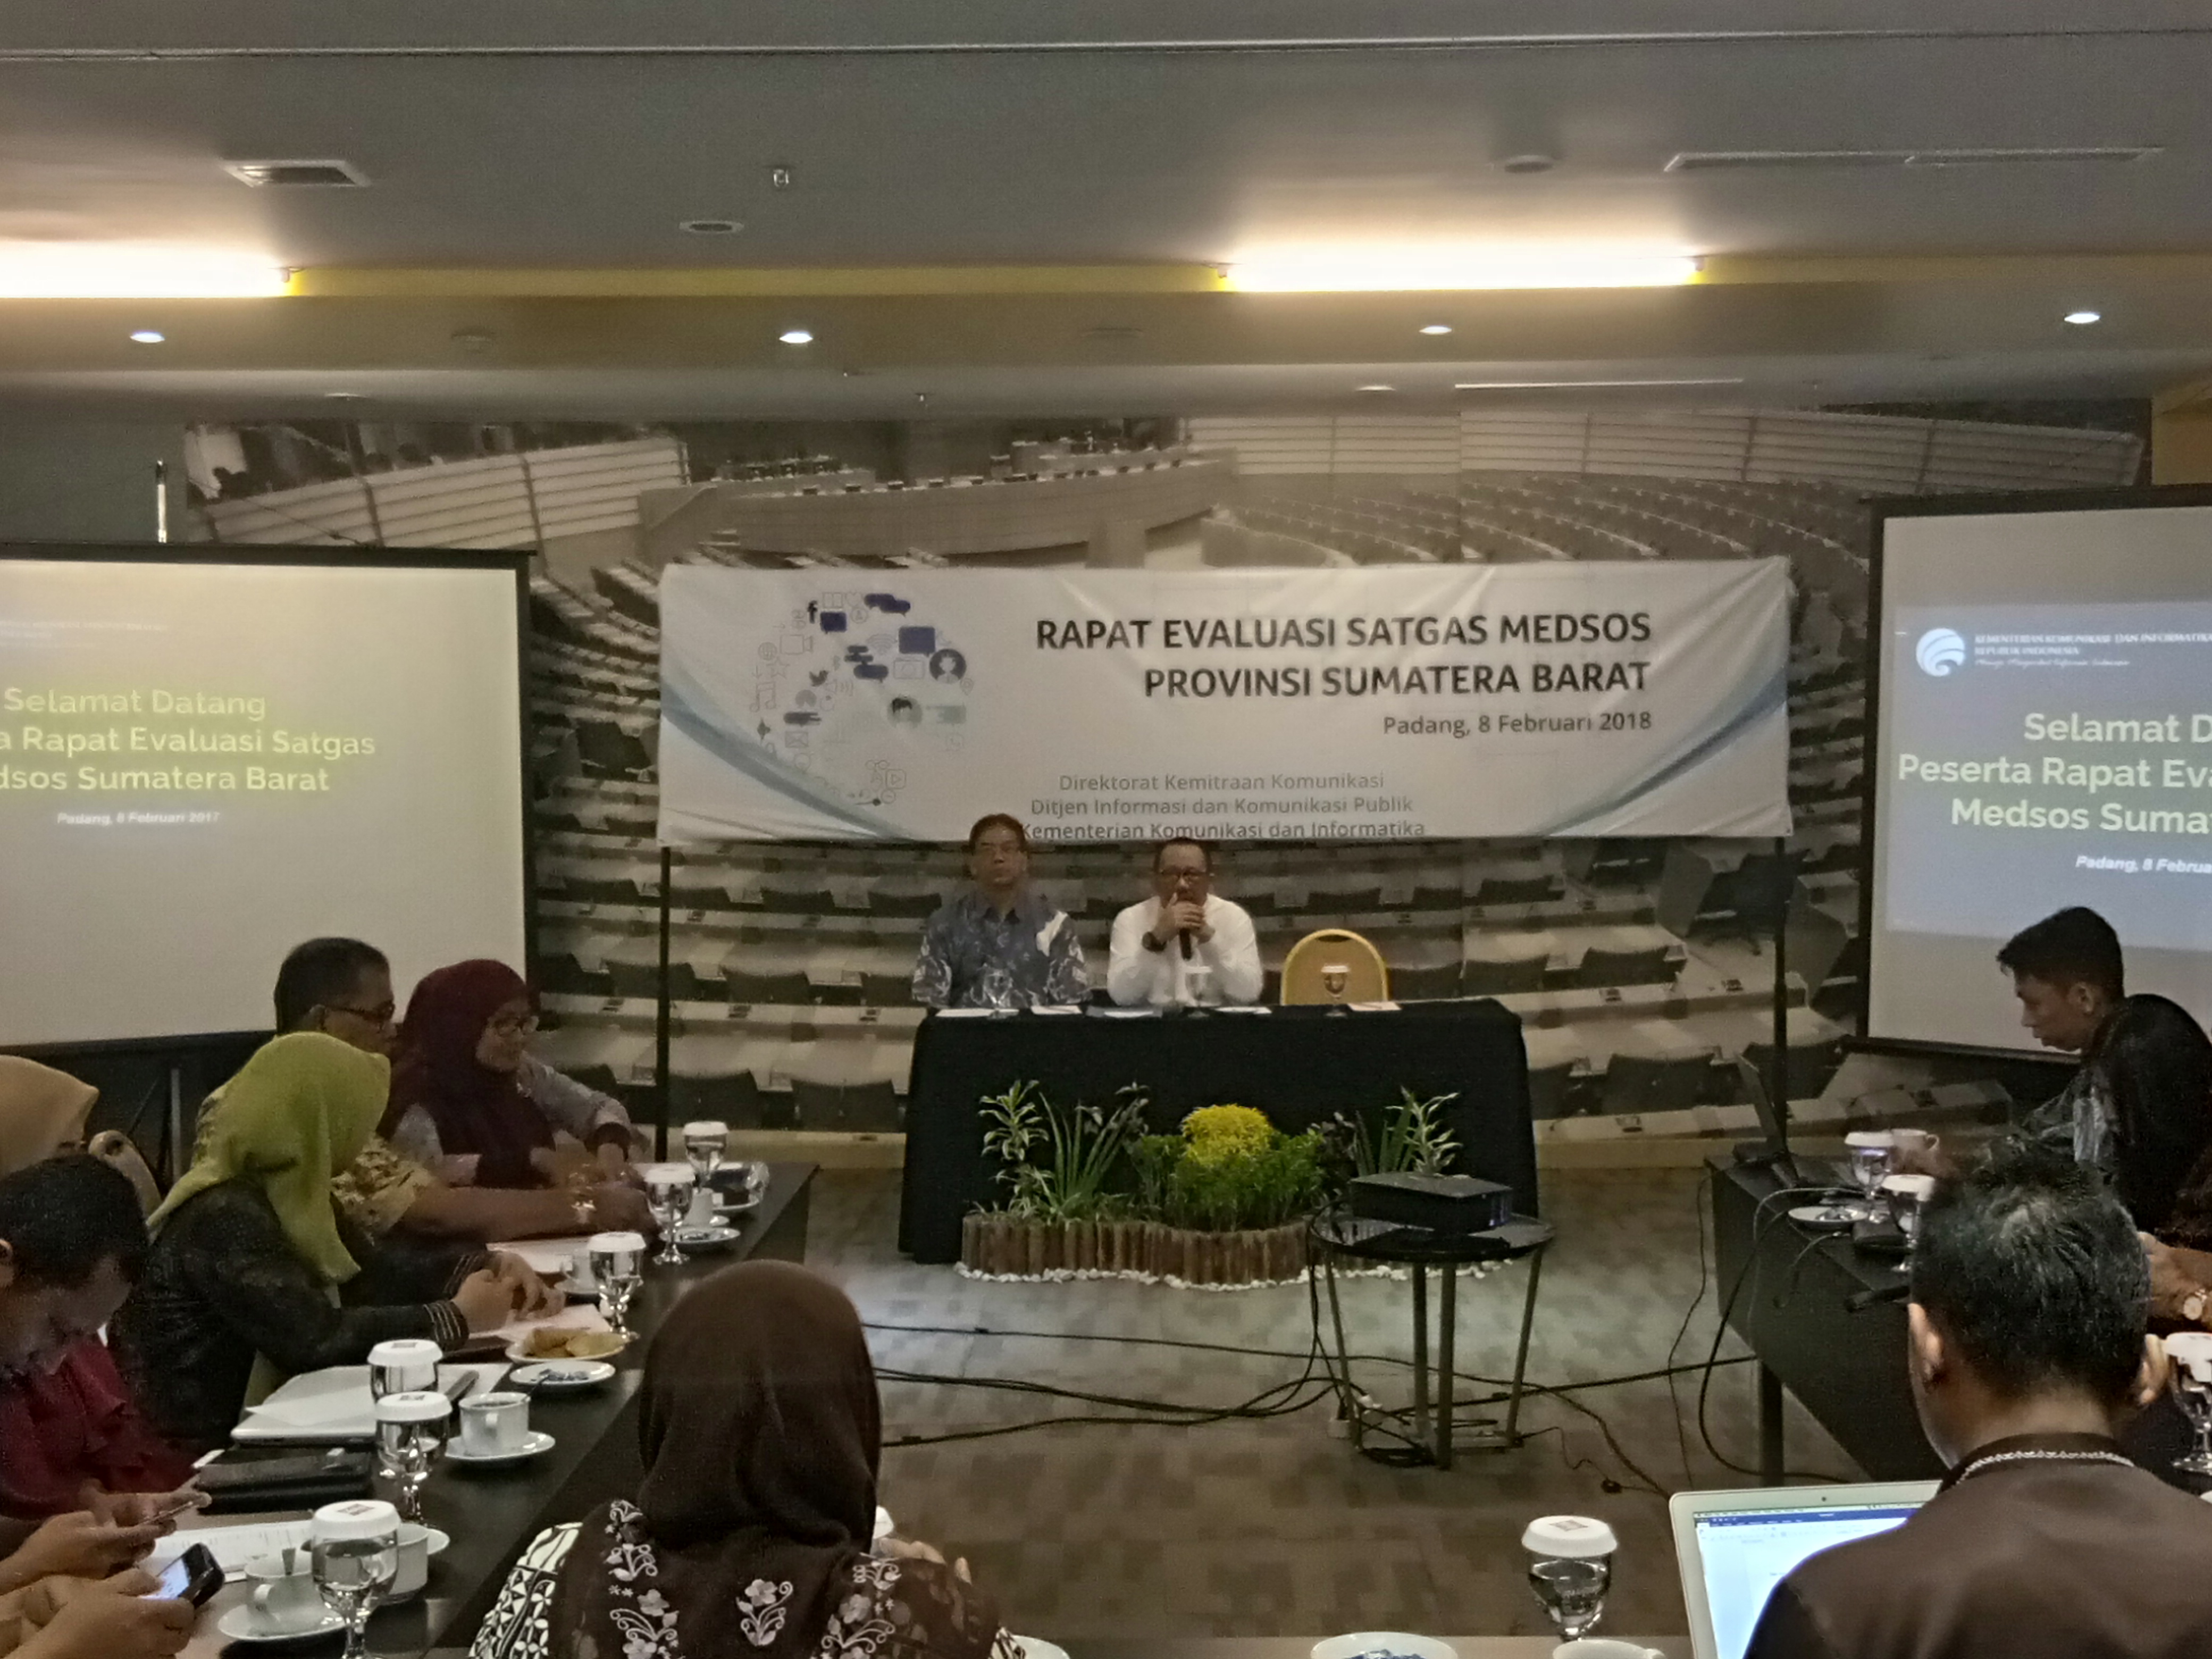 Rapat Evaluasi Satgas Medsos Provinsi Sumatera Barat